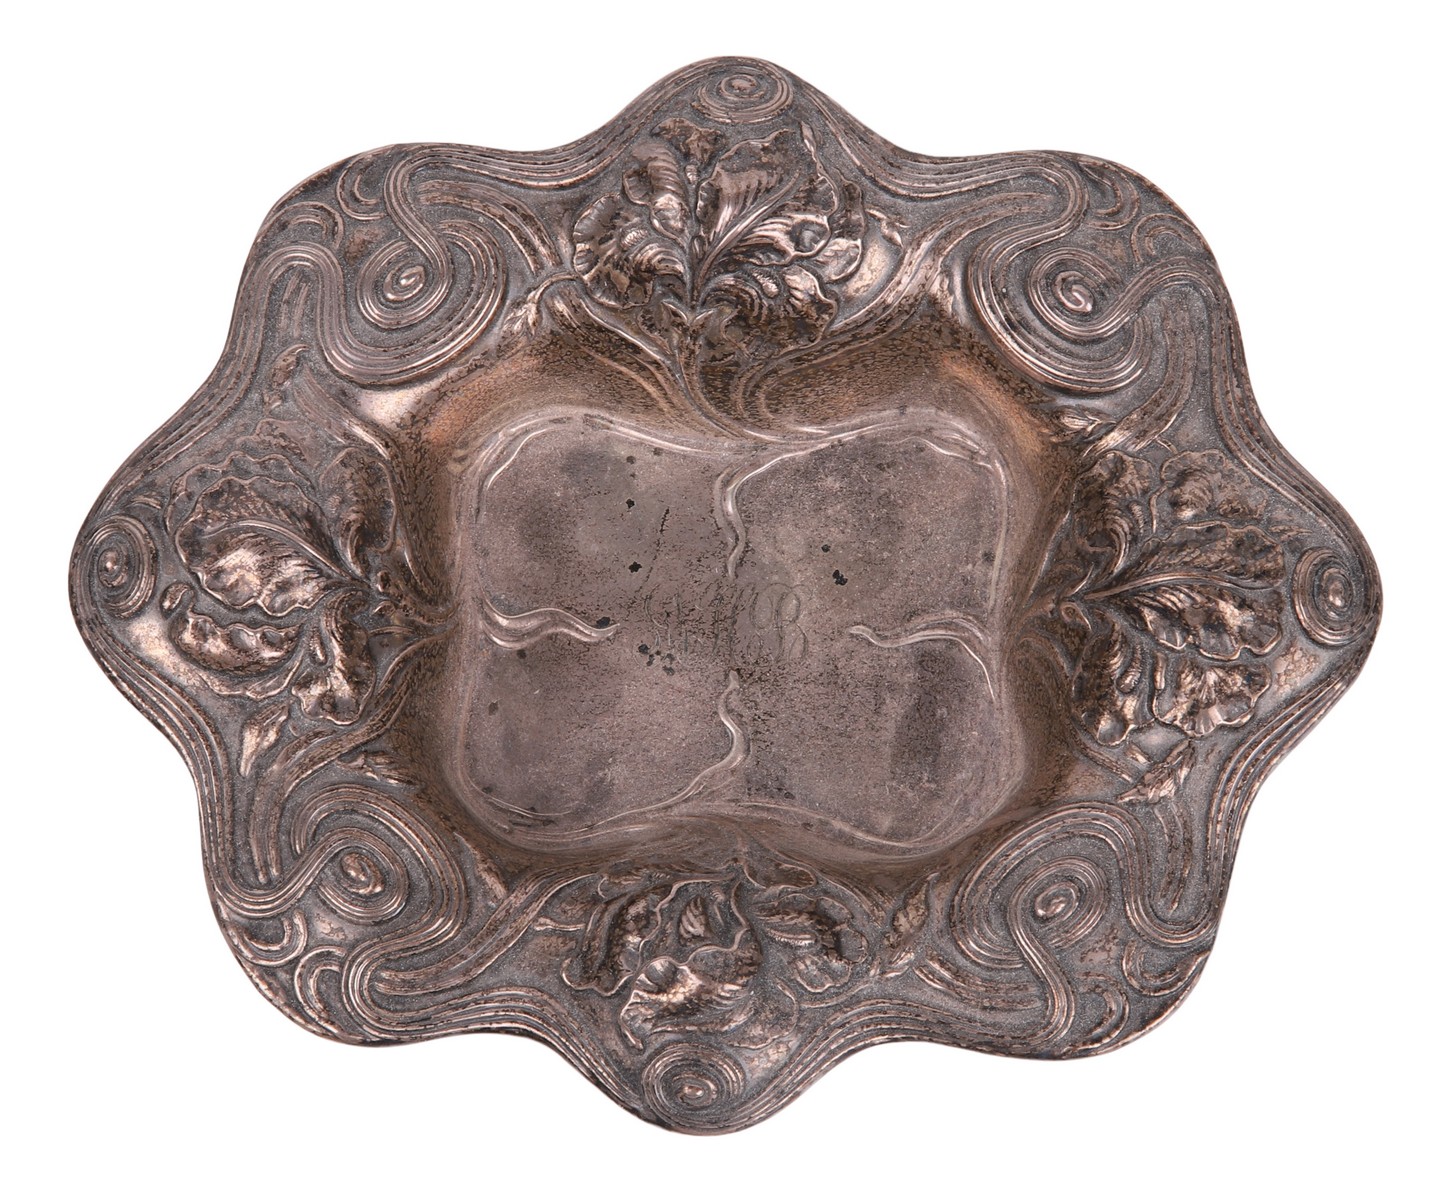 Alvin sterling silver bowl Art 317e6e